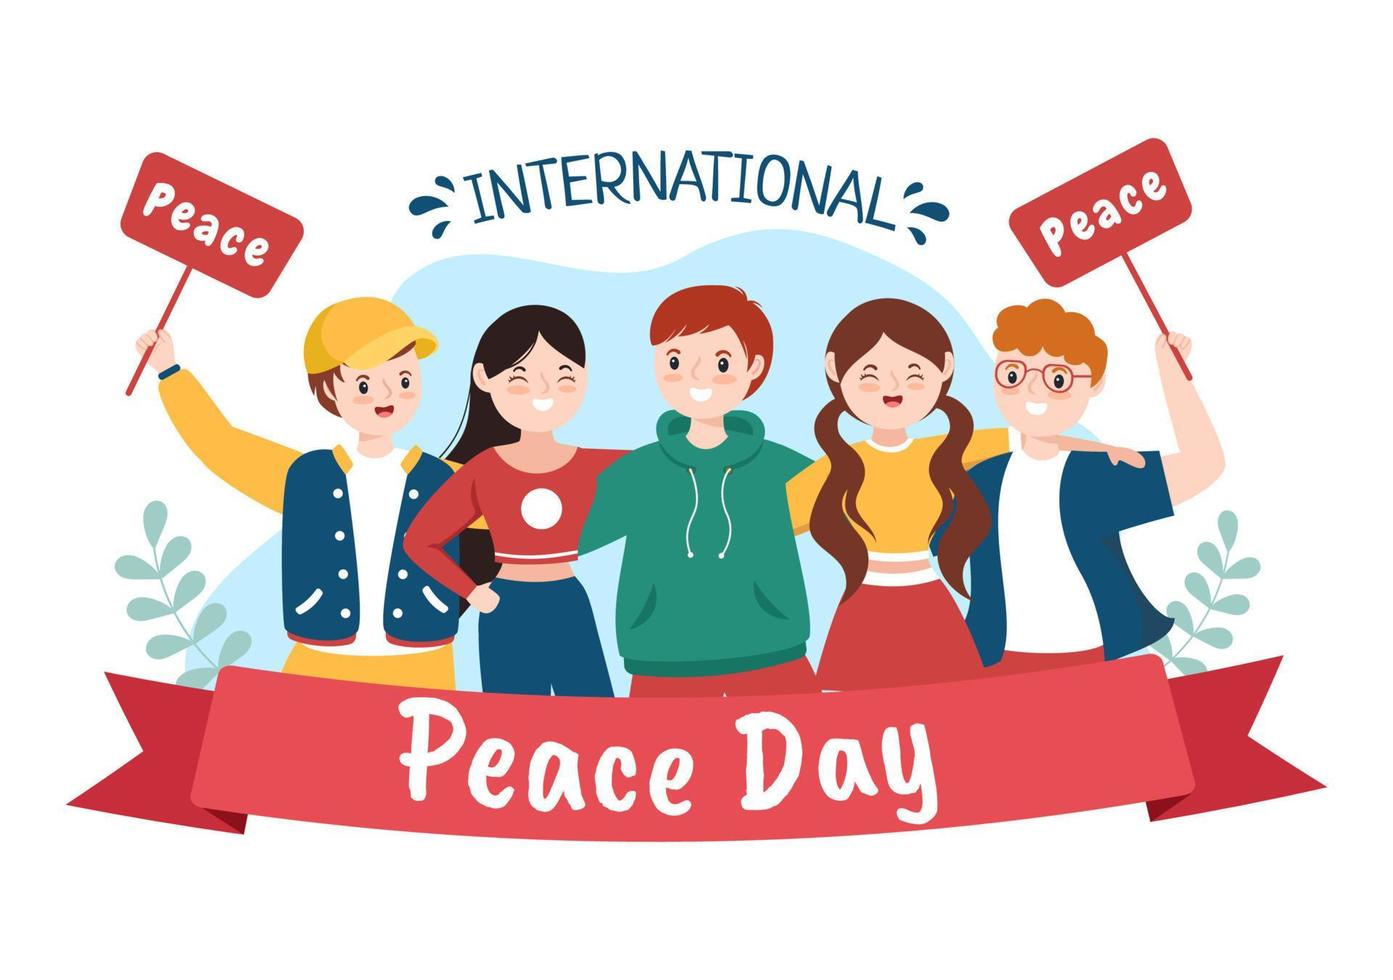 internationale vredesdag cartoon afbeelding met handen, jongeren, globe en blauwe lucht om welvarend te creëren in de wereld in vlakke stijl vector